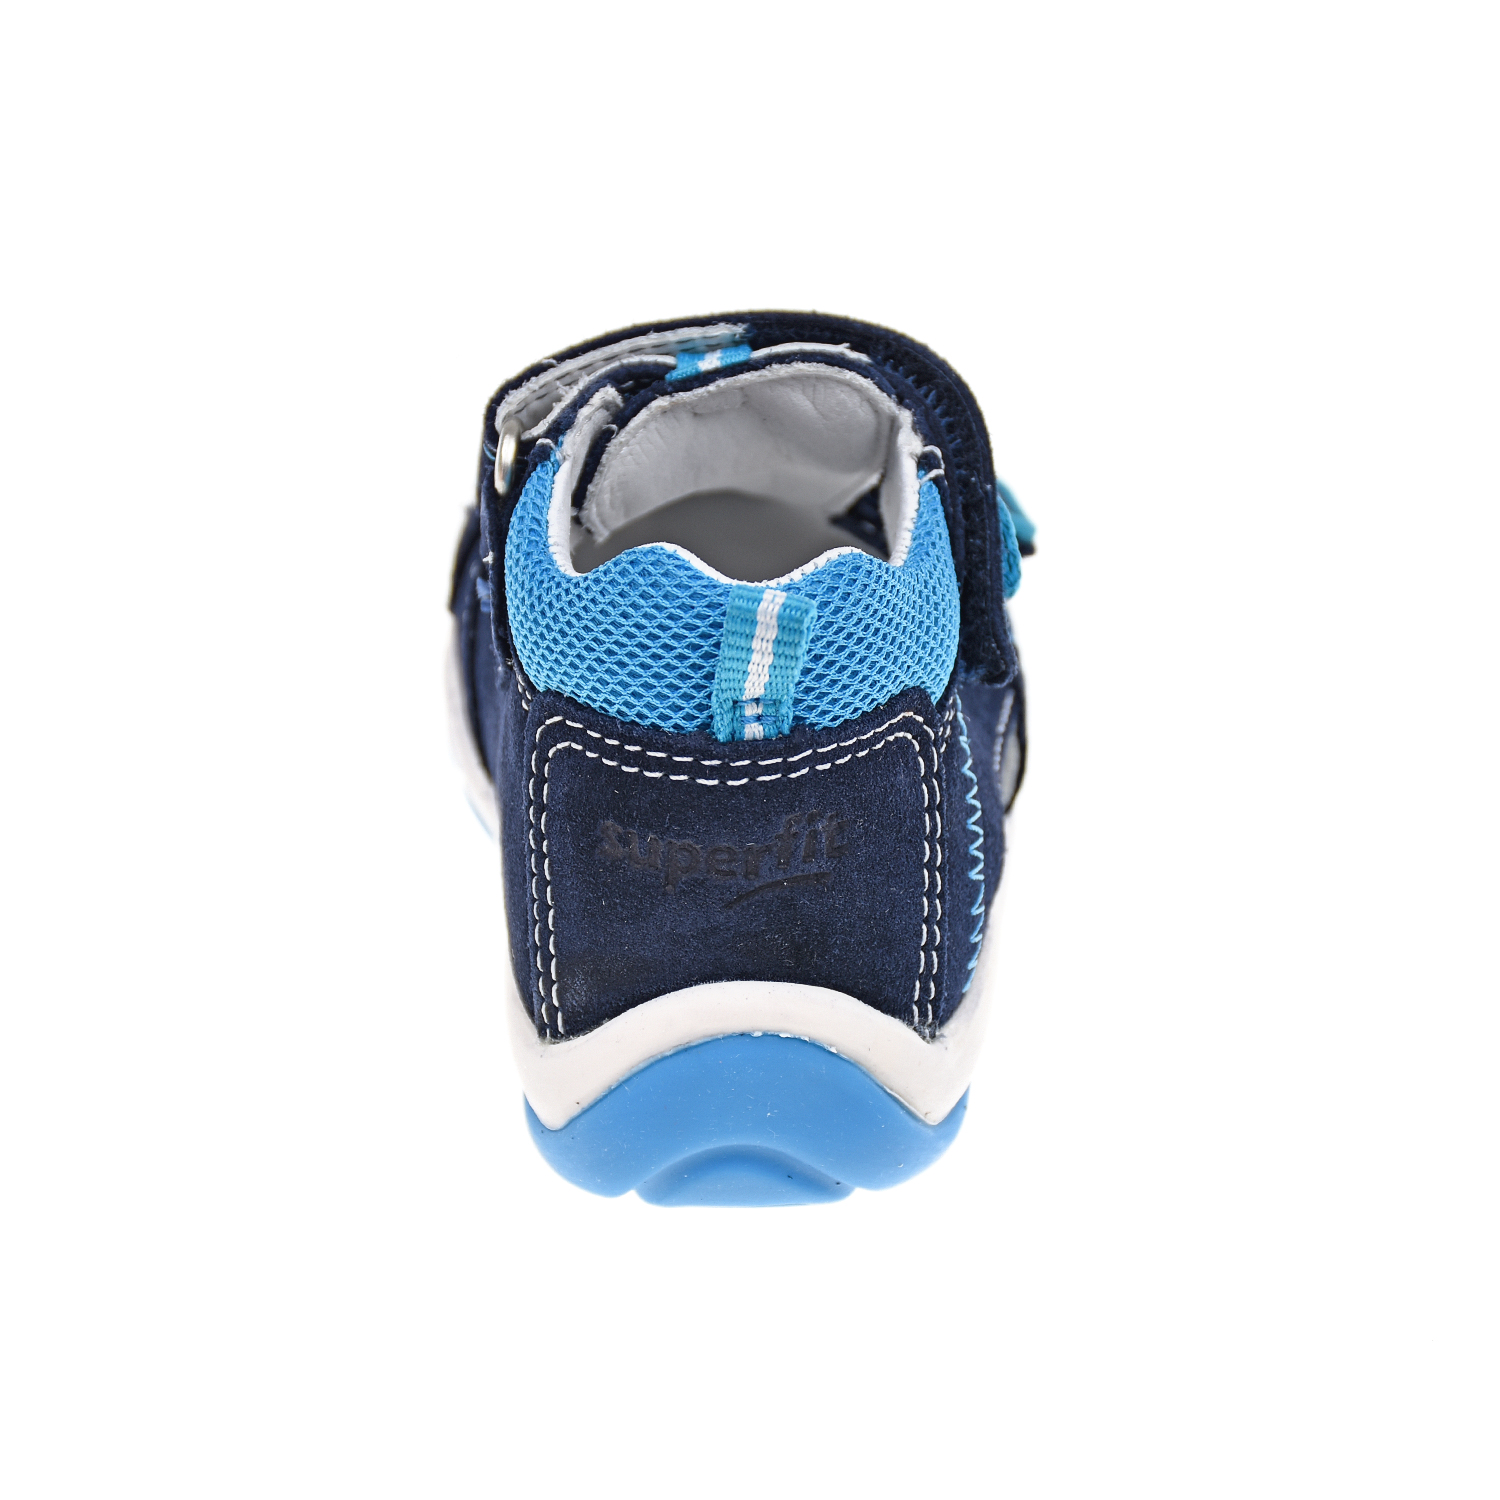 Кожаные сандалии с аппликацией "Футбольный мяч" SUPERFIT детские, размер 18, цвет синий - фото 3